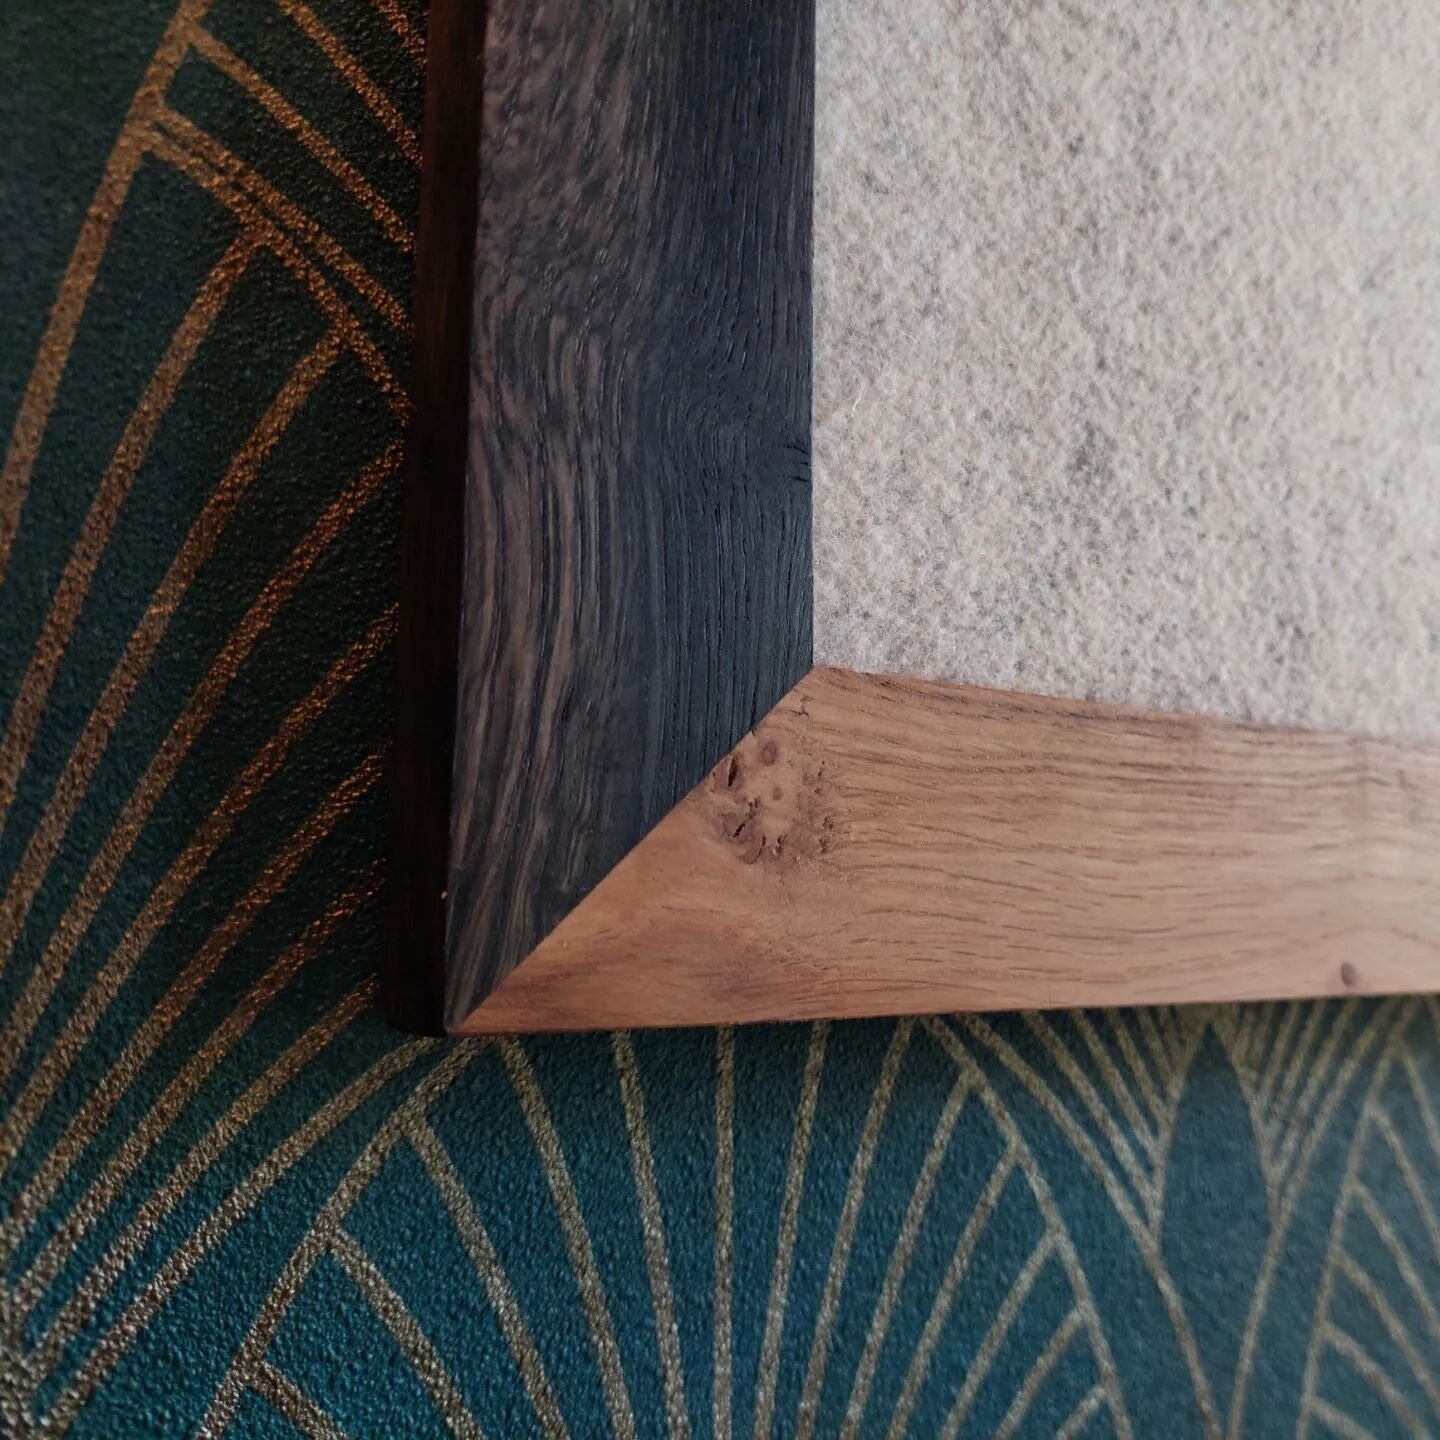 Oxidierte Eiche 😮. Metall im Baum hat &uuml;ber die Jahre das Holz schwarz gef&auml;rbt, aber nicht geschw&auml;cht. Ein seltenes und besonderes St&uuml;ck Holz.

https://zumhoffdesignunikat.etsy.com

#unikat #eichenholz #pinboard #memoboard